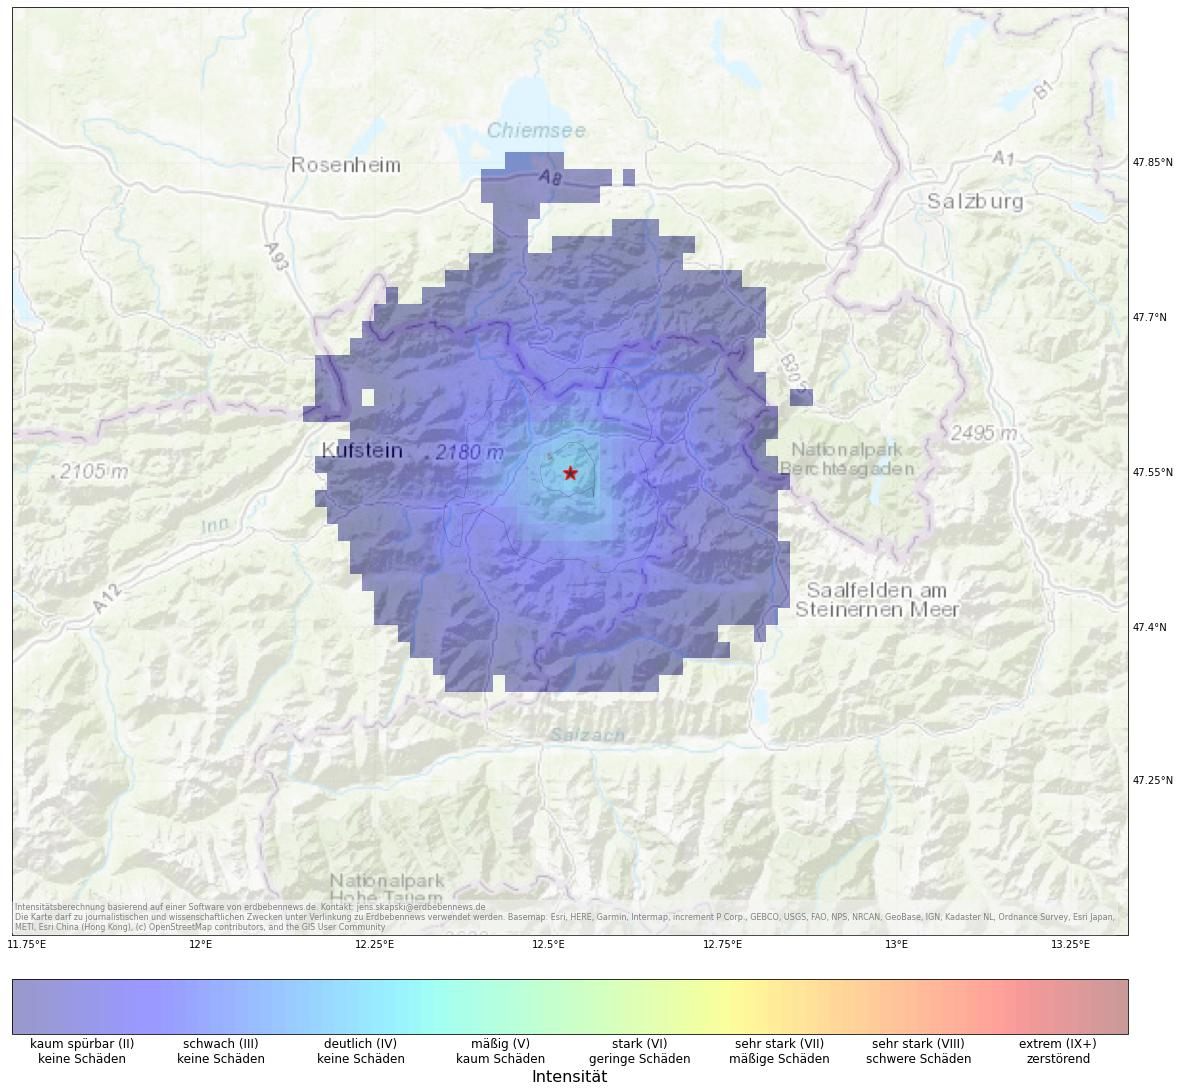 Berechnete Intensität (ShakeMap) des Erdbebens der Stärke 3.4 am 19. Januar, 3:30 Uhr in Österreich